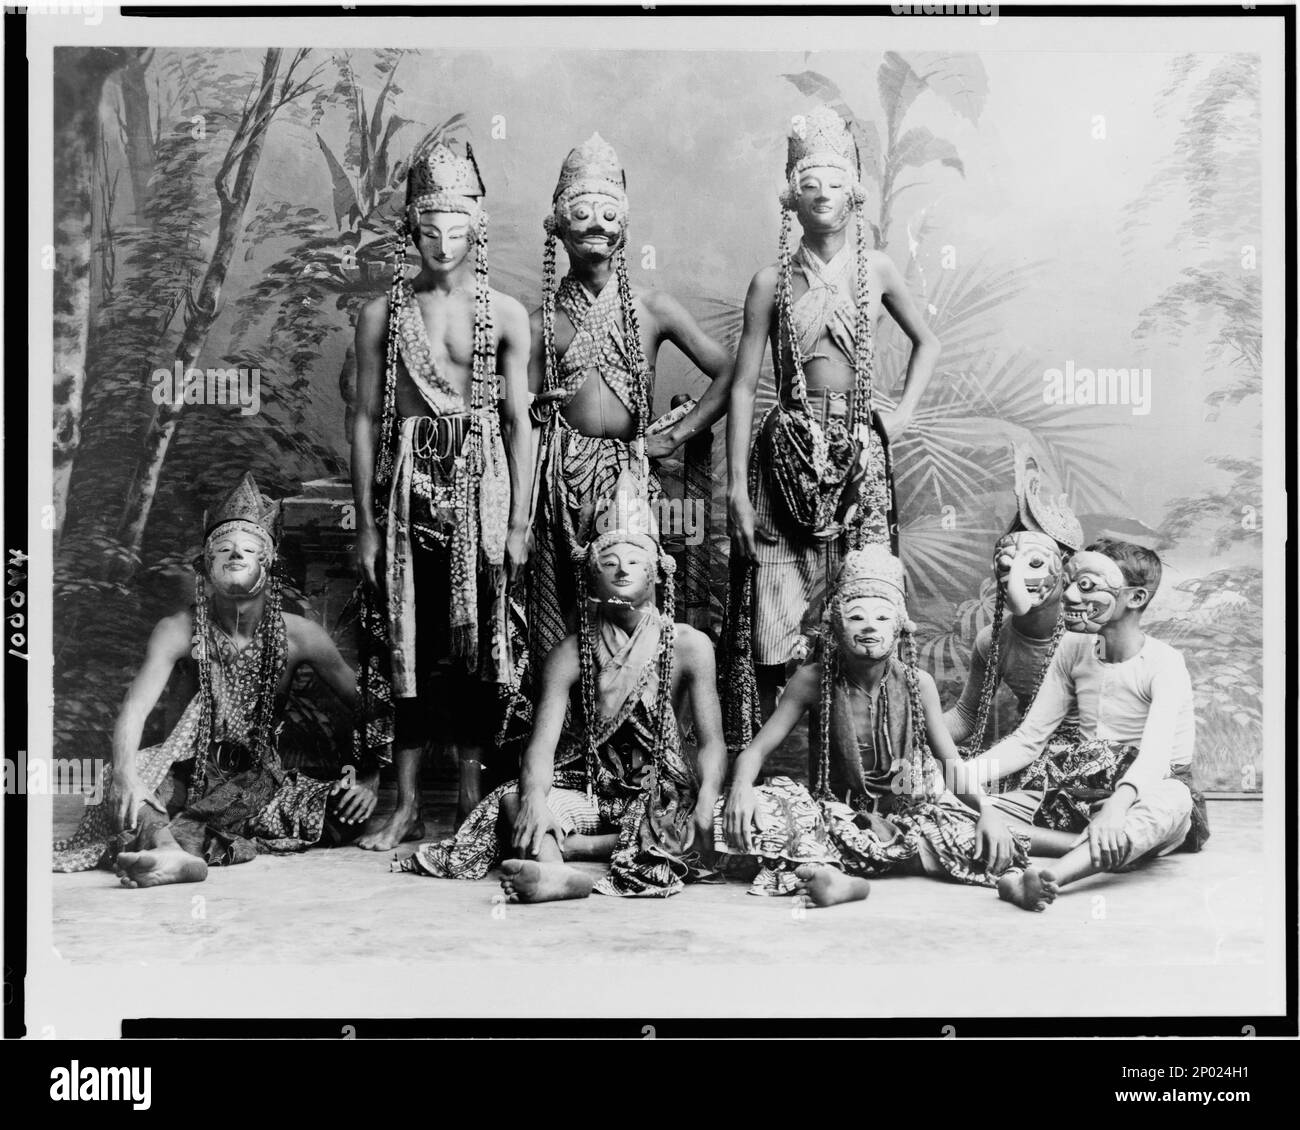 Maskierte Männer des Theaters, die in "Topéing", Java, Indonesien, auftreten. Frank and Frances Carpenter Collection, Theaterproduktionen, Indonesien, Java, 1900-1930. Stockfoto